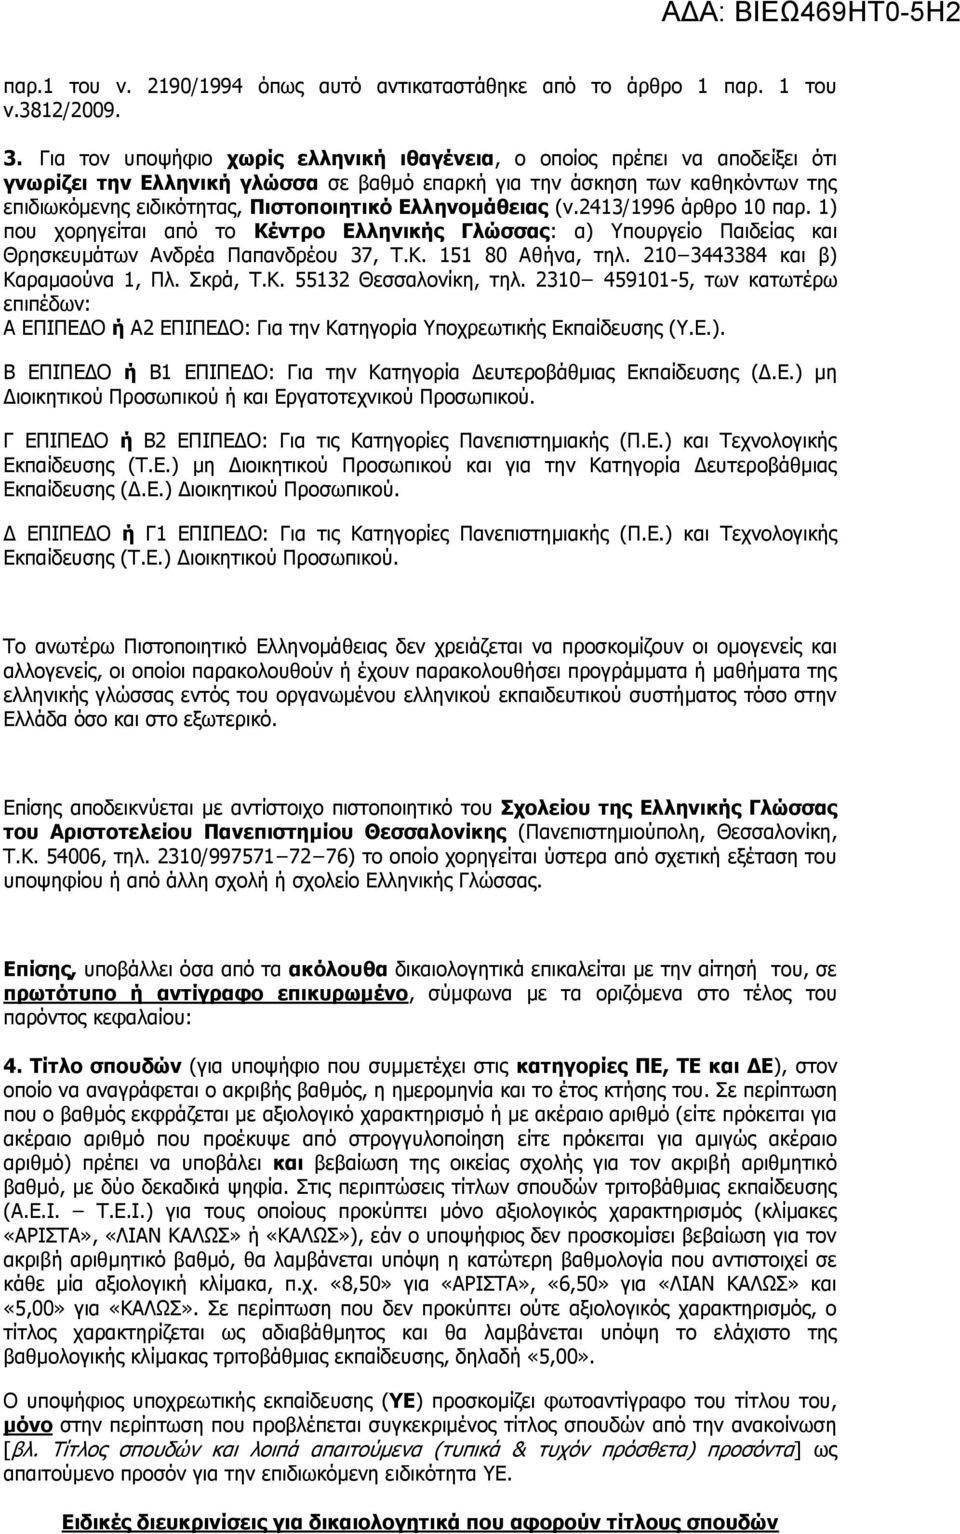 Ελληνομάθειας (ν.2413/1996 άρθρο 10 παρ. 1) που χορηγείται από το Κέντρο Ελληνικής Γλώσσας: α) Υπουργείο Παιδείας και Θρησκευμάτων Ανδρέα Παπανδρέου 37, Τ.Κ. 151 80 Αθήνα, τηλ.